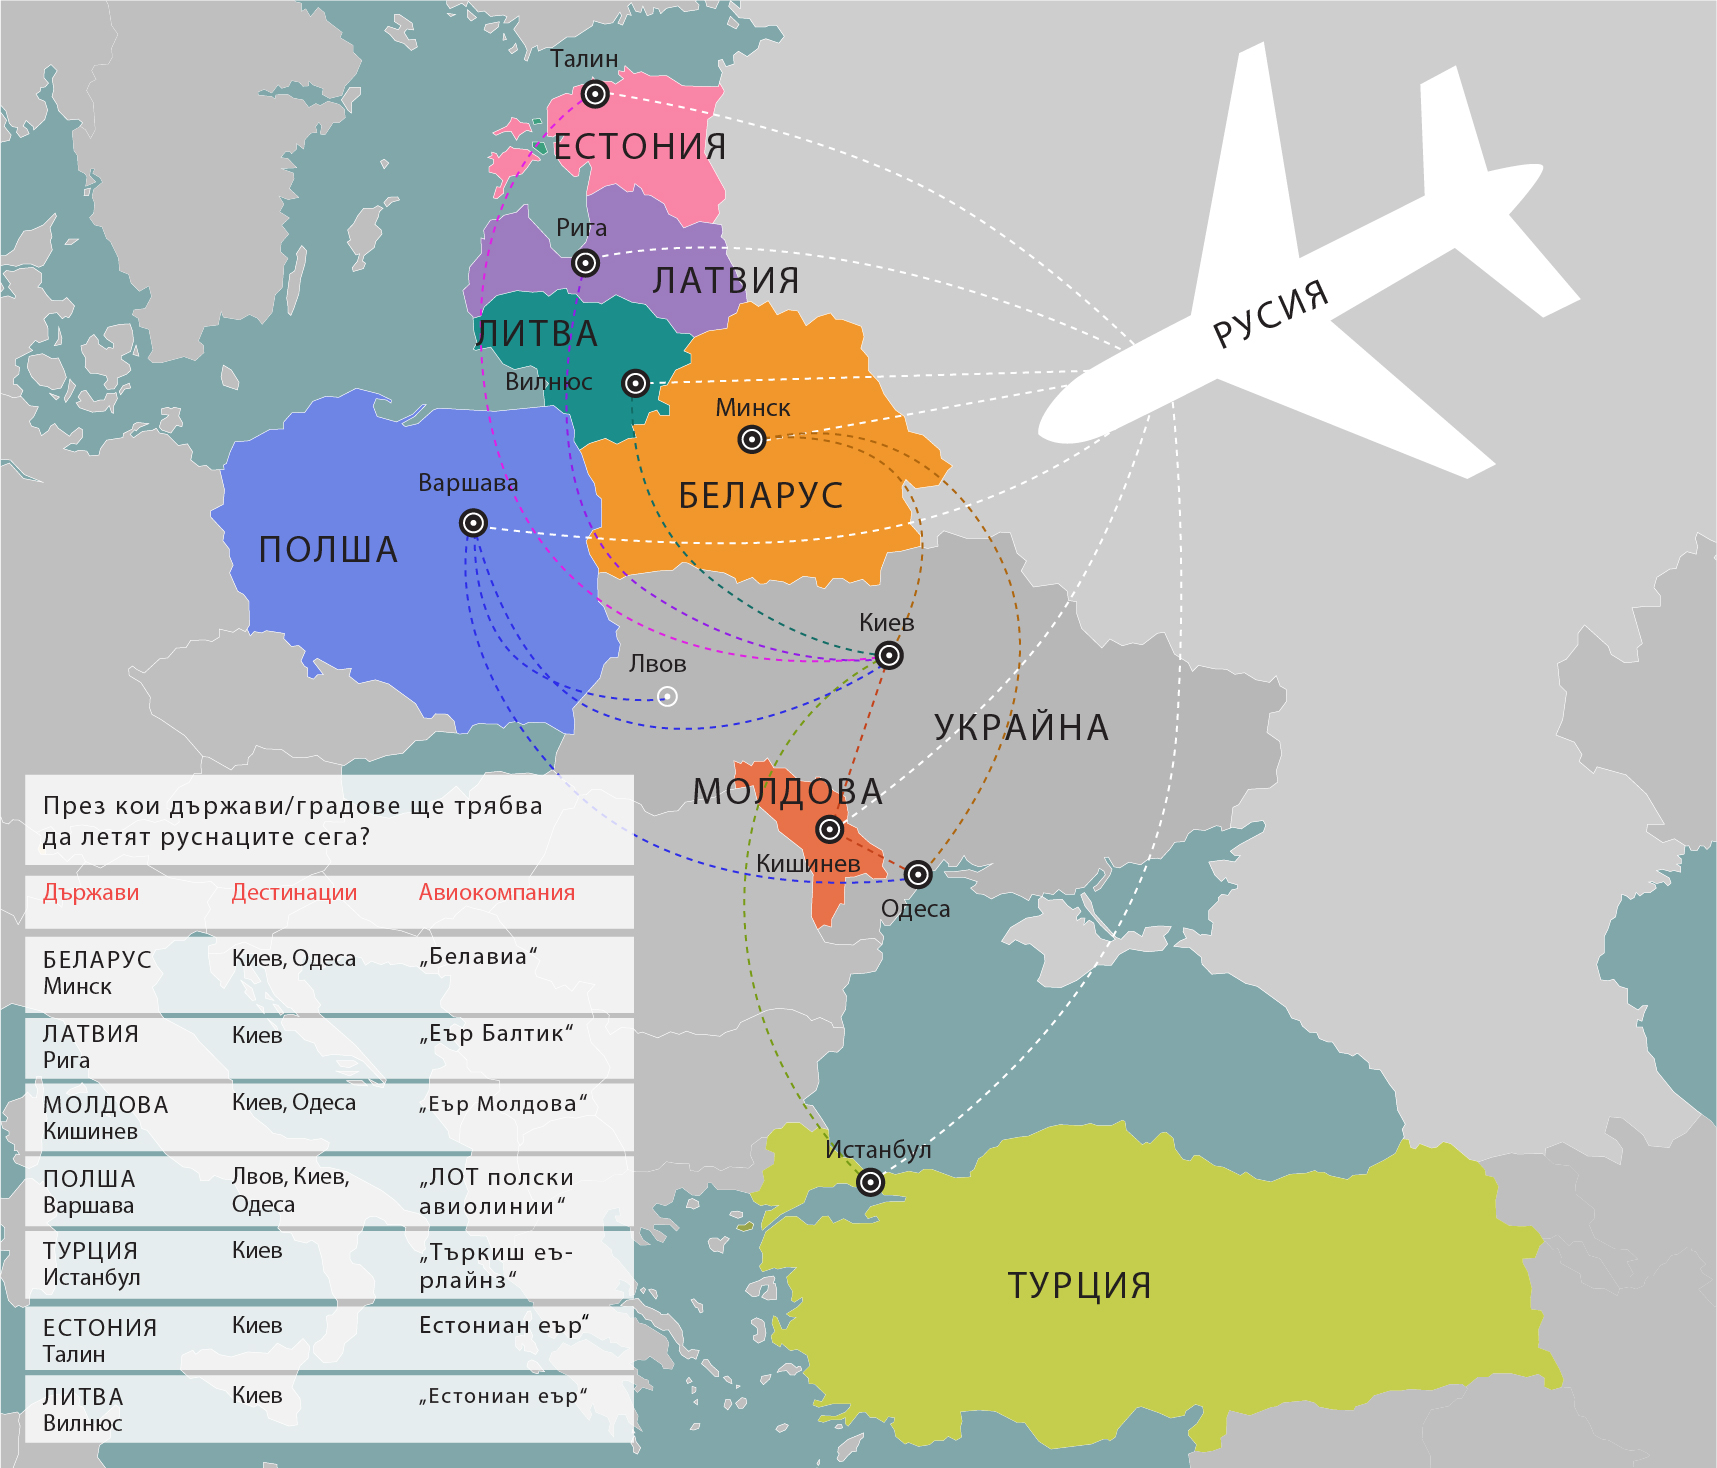 Чуждестранни авиокомпании запълват празнината, оставена от руските и украински превозвачи след прекратяването на директните полети между двете държави на 25 октомври. Според играчи на пазара, с които разговаря &bdquo;Руски дневник&ldquo;, основните печеливши от тази ситуация са националните авиолинии на Беларус (&bdquo;Белавиа)&ldquo;, Латвия (&bdquo;Еър Балтик&ldquo;) и Молдова (&bdquo;Еър Молдова&ldquo;).